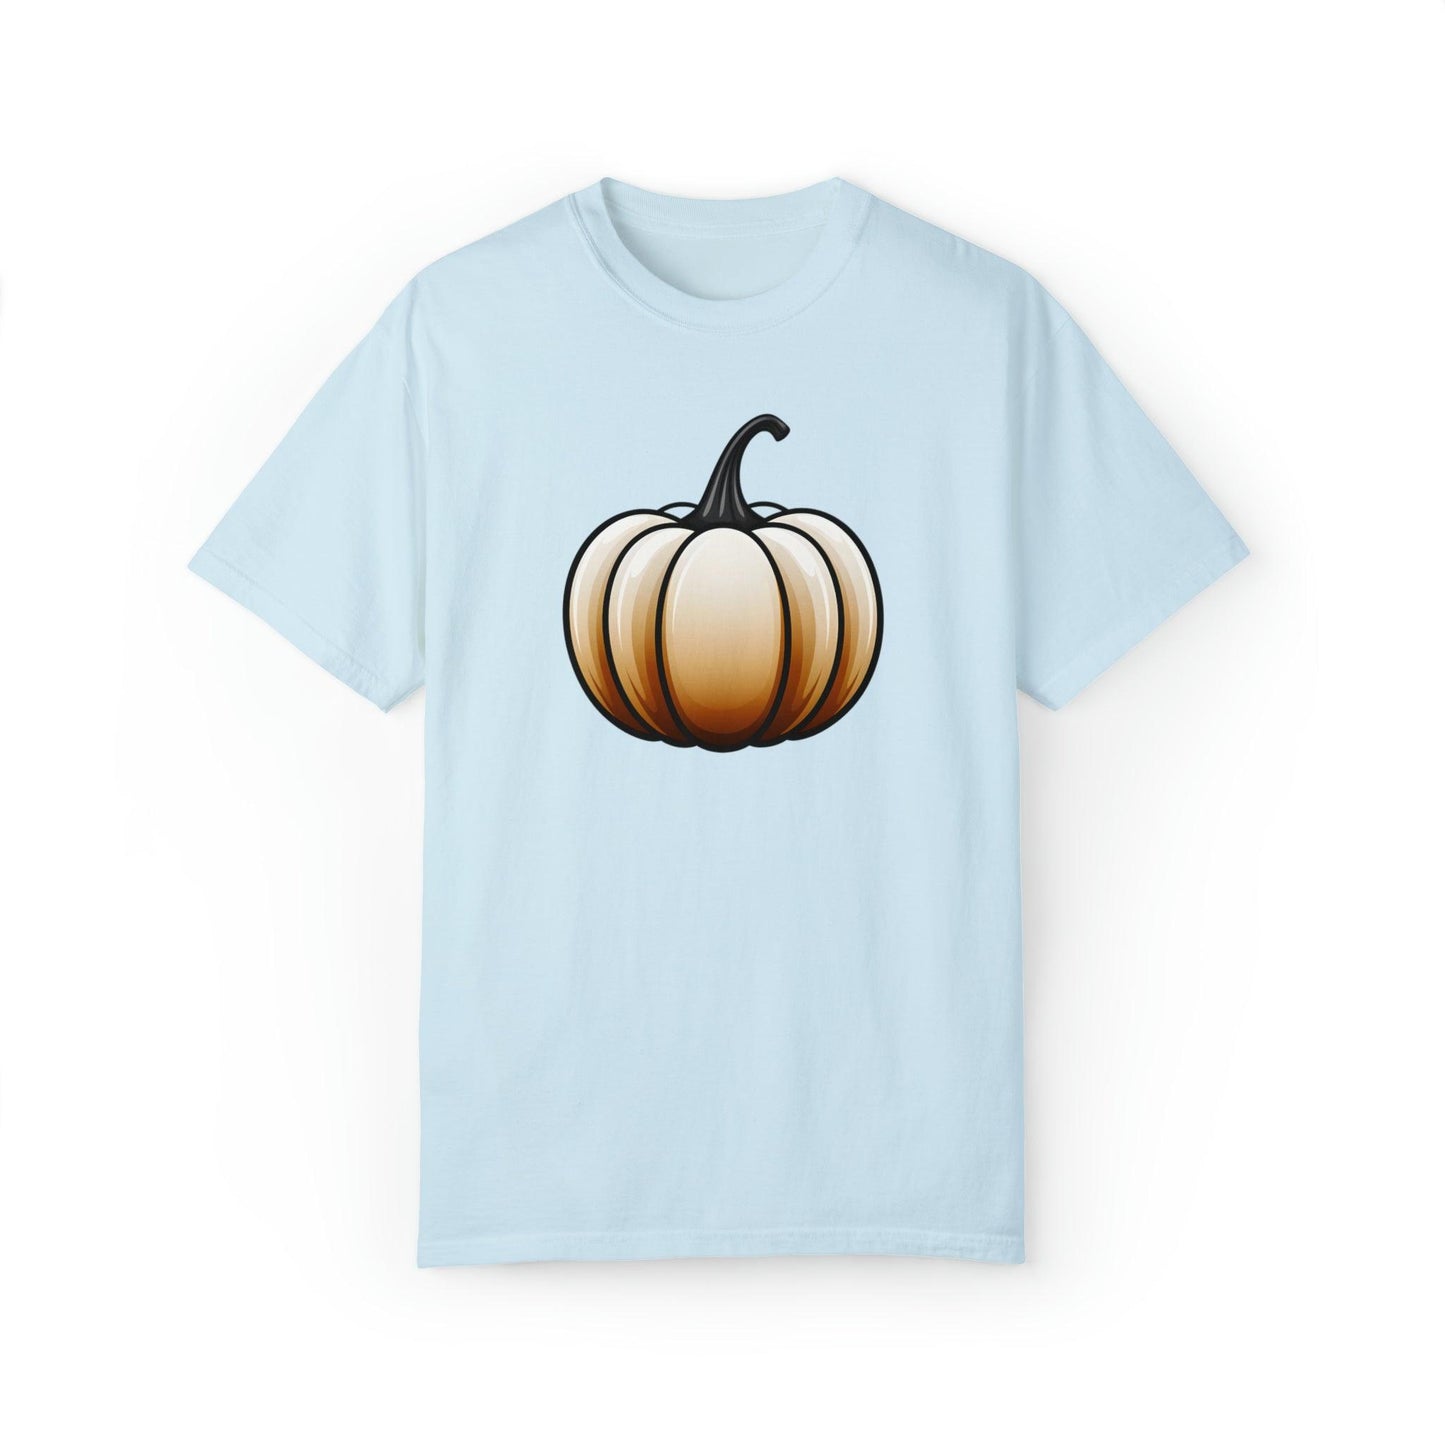 Pumpkin Shirt Halloween Shirt Fall Gift Halloween Costume Pumpkin T Shirt - Cute Pumpkin Tee Fall Shirt Halloween Gift Pumpkin Lover Shirt